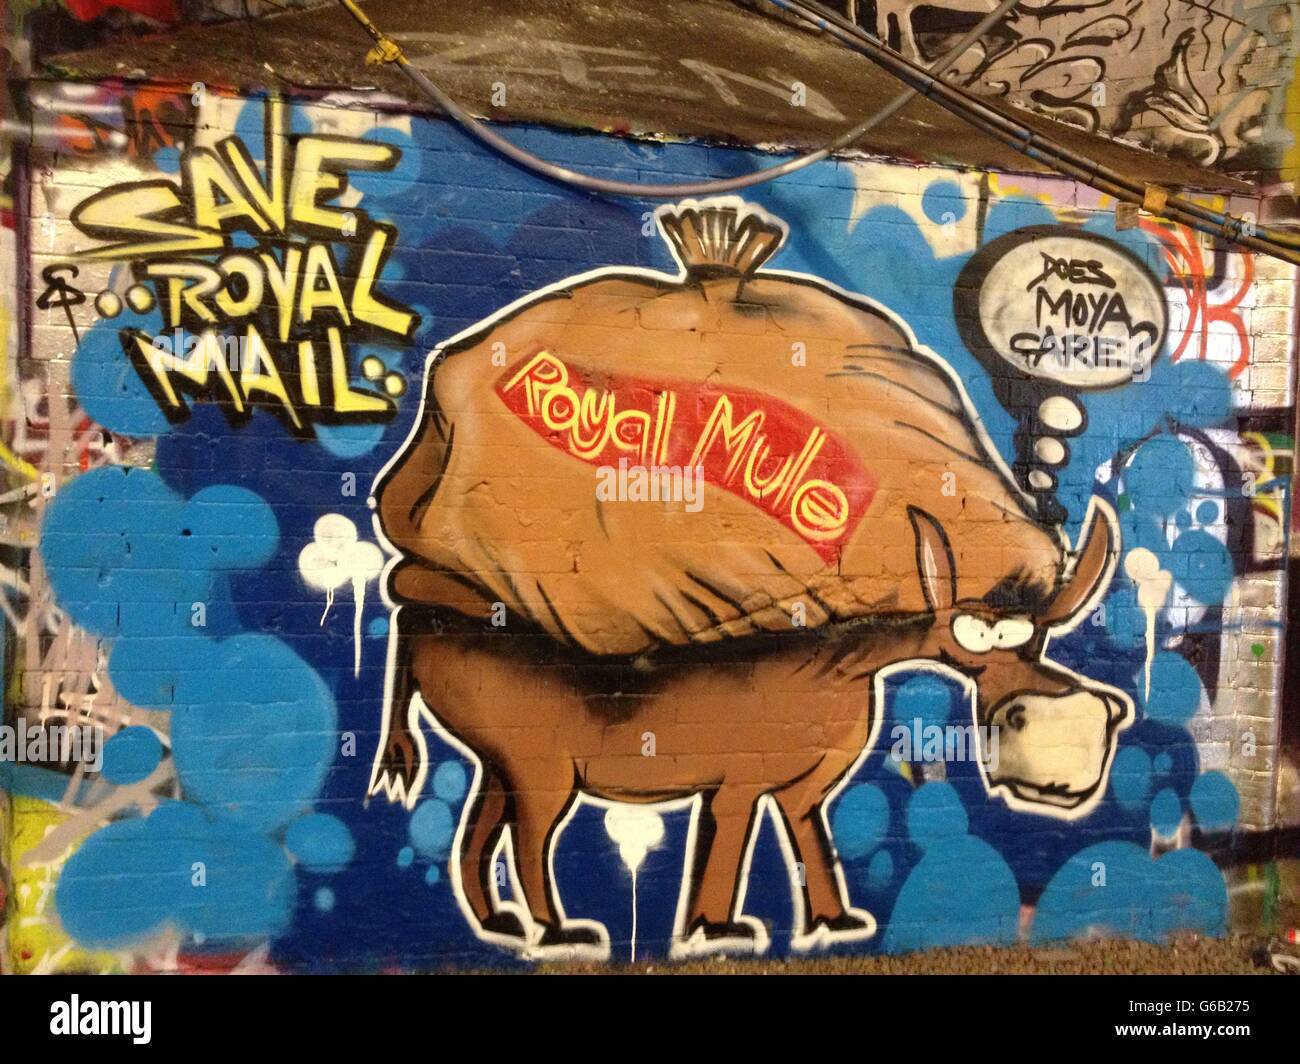 Une oeuvre grafitti qui a paru dans la rue Leake, également connue sous le nom de Banksy tunnel, près de la gare de Waterloo dans le sud de Londres contre la privatisation proposée de Royal Mail. Banque D'Images